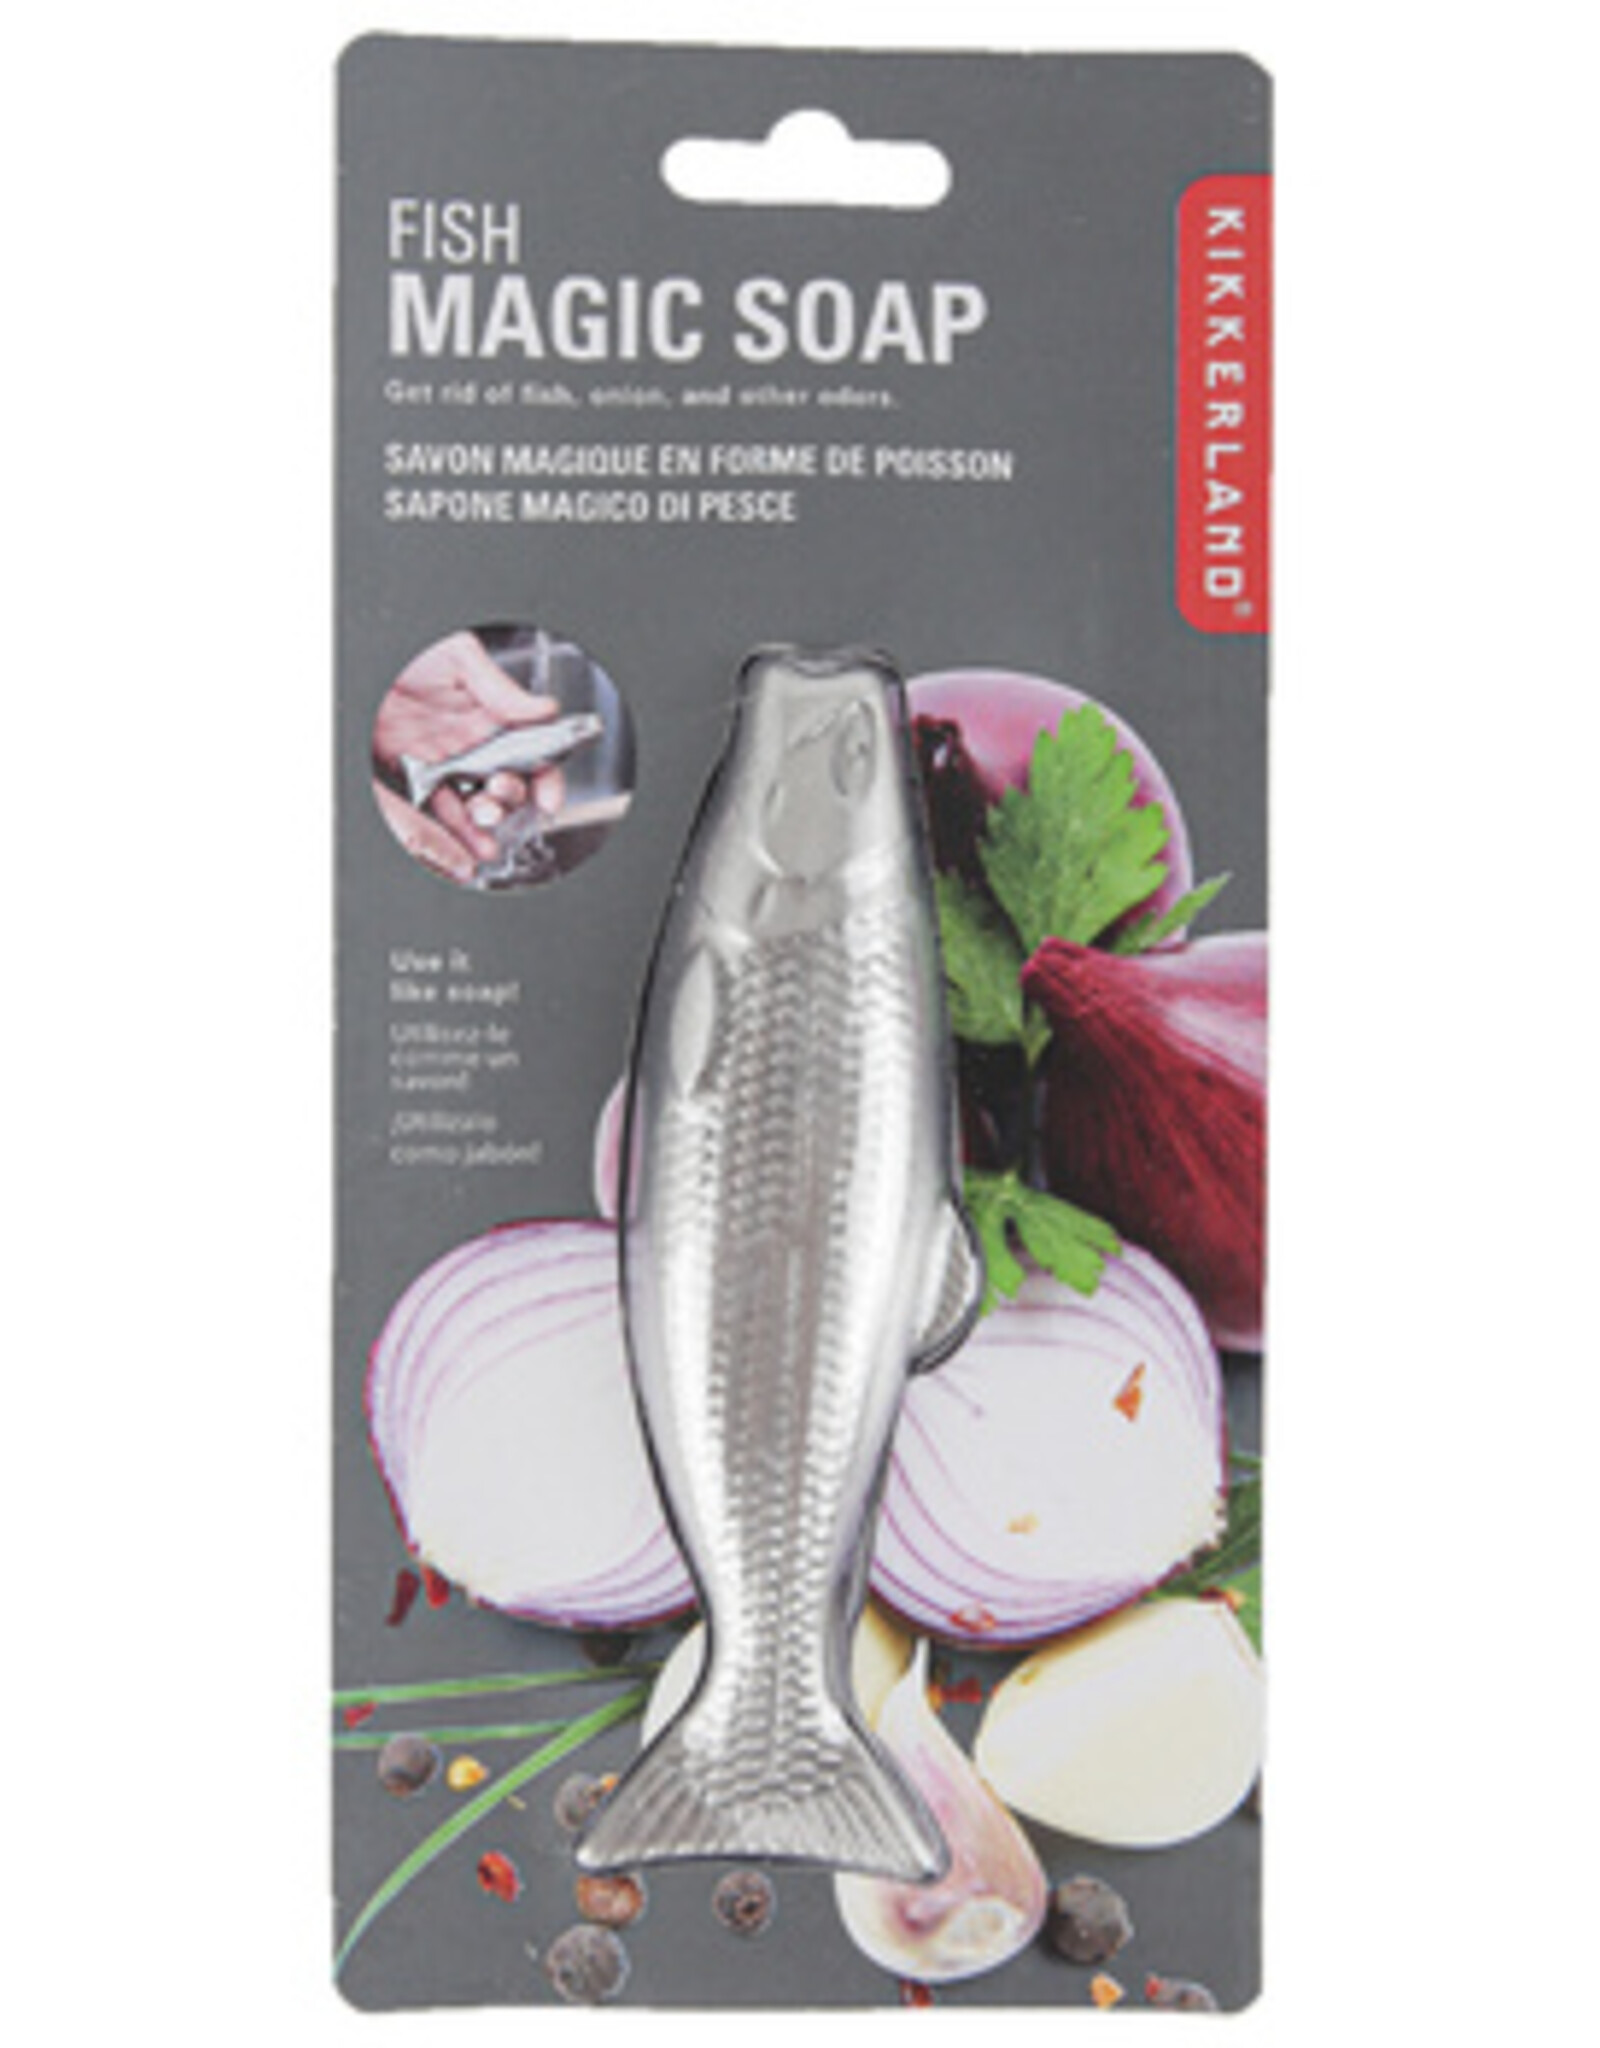 Kikkerland Magic Soap - Fish